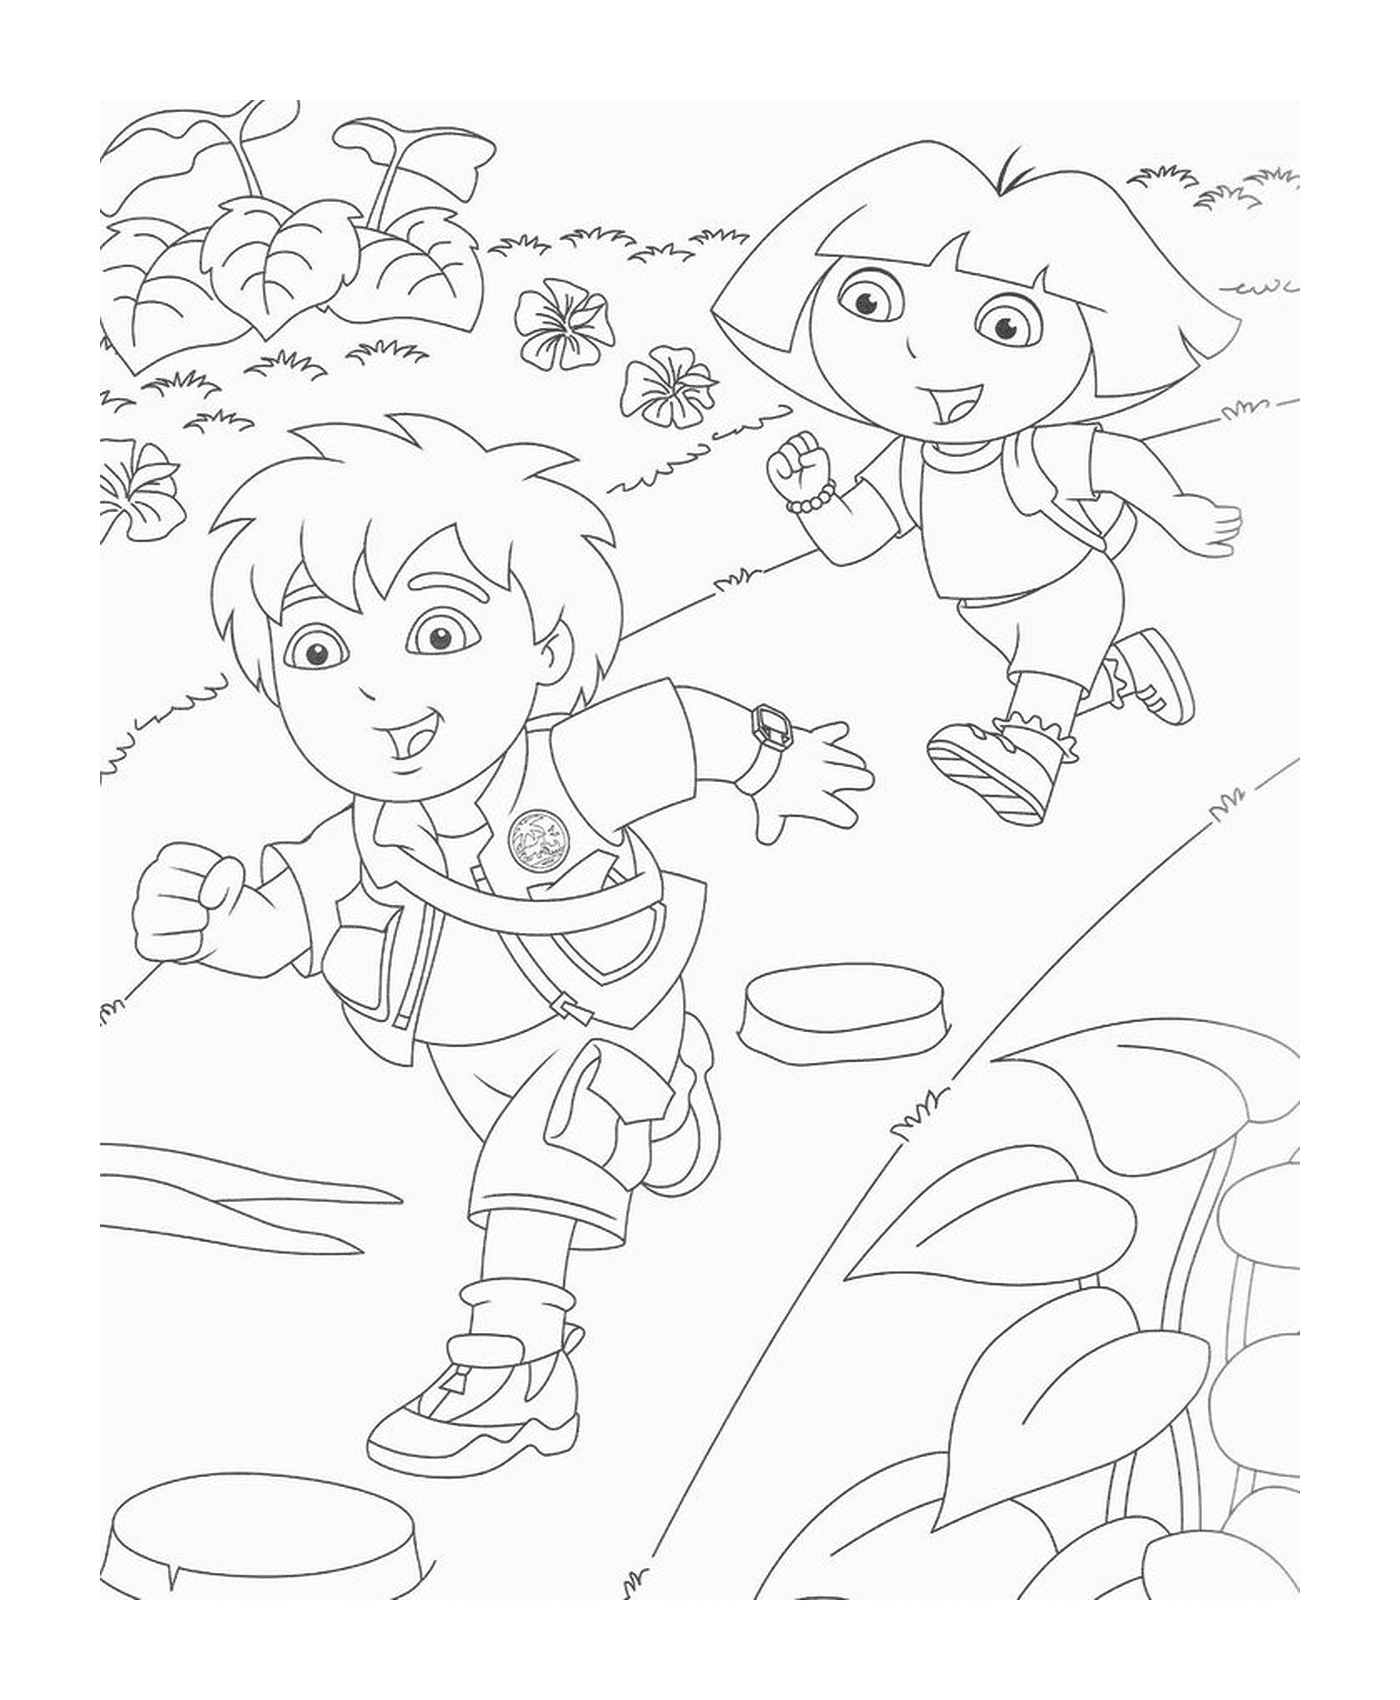   Dora l'exploratrice et Diego qui courent 